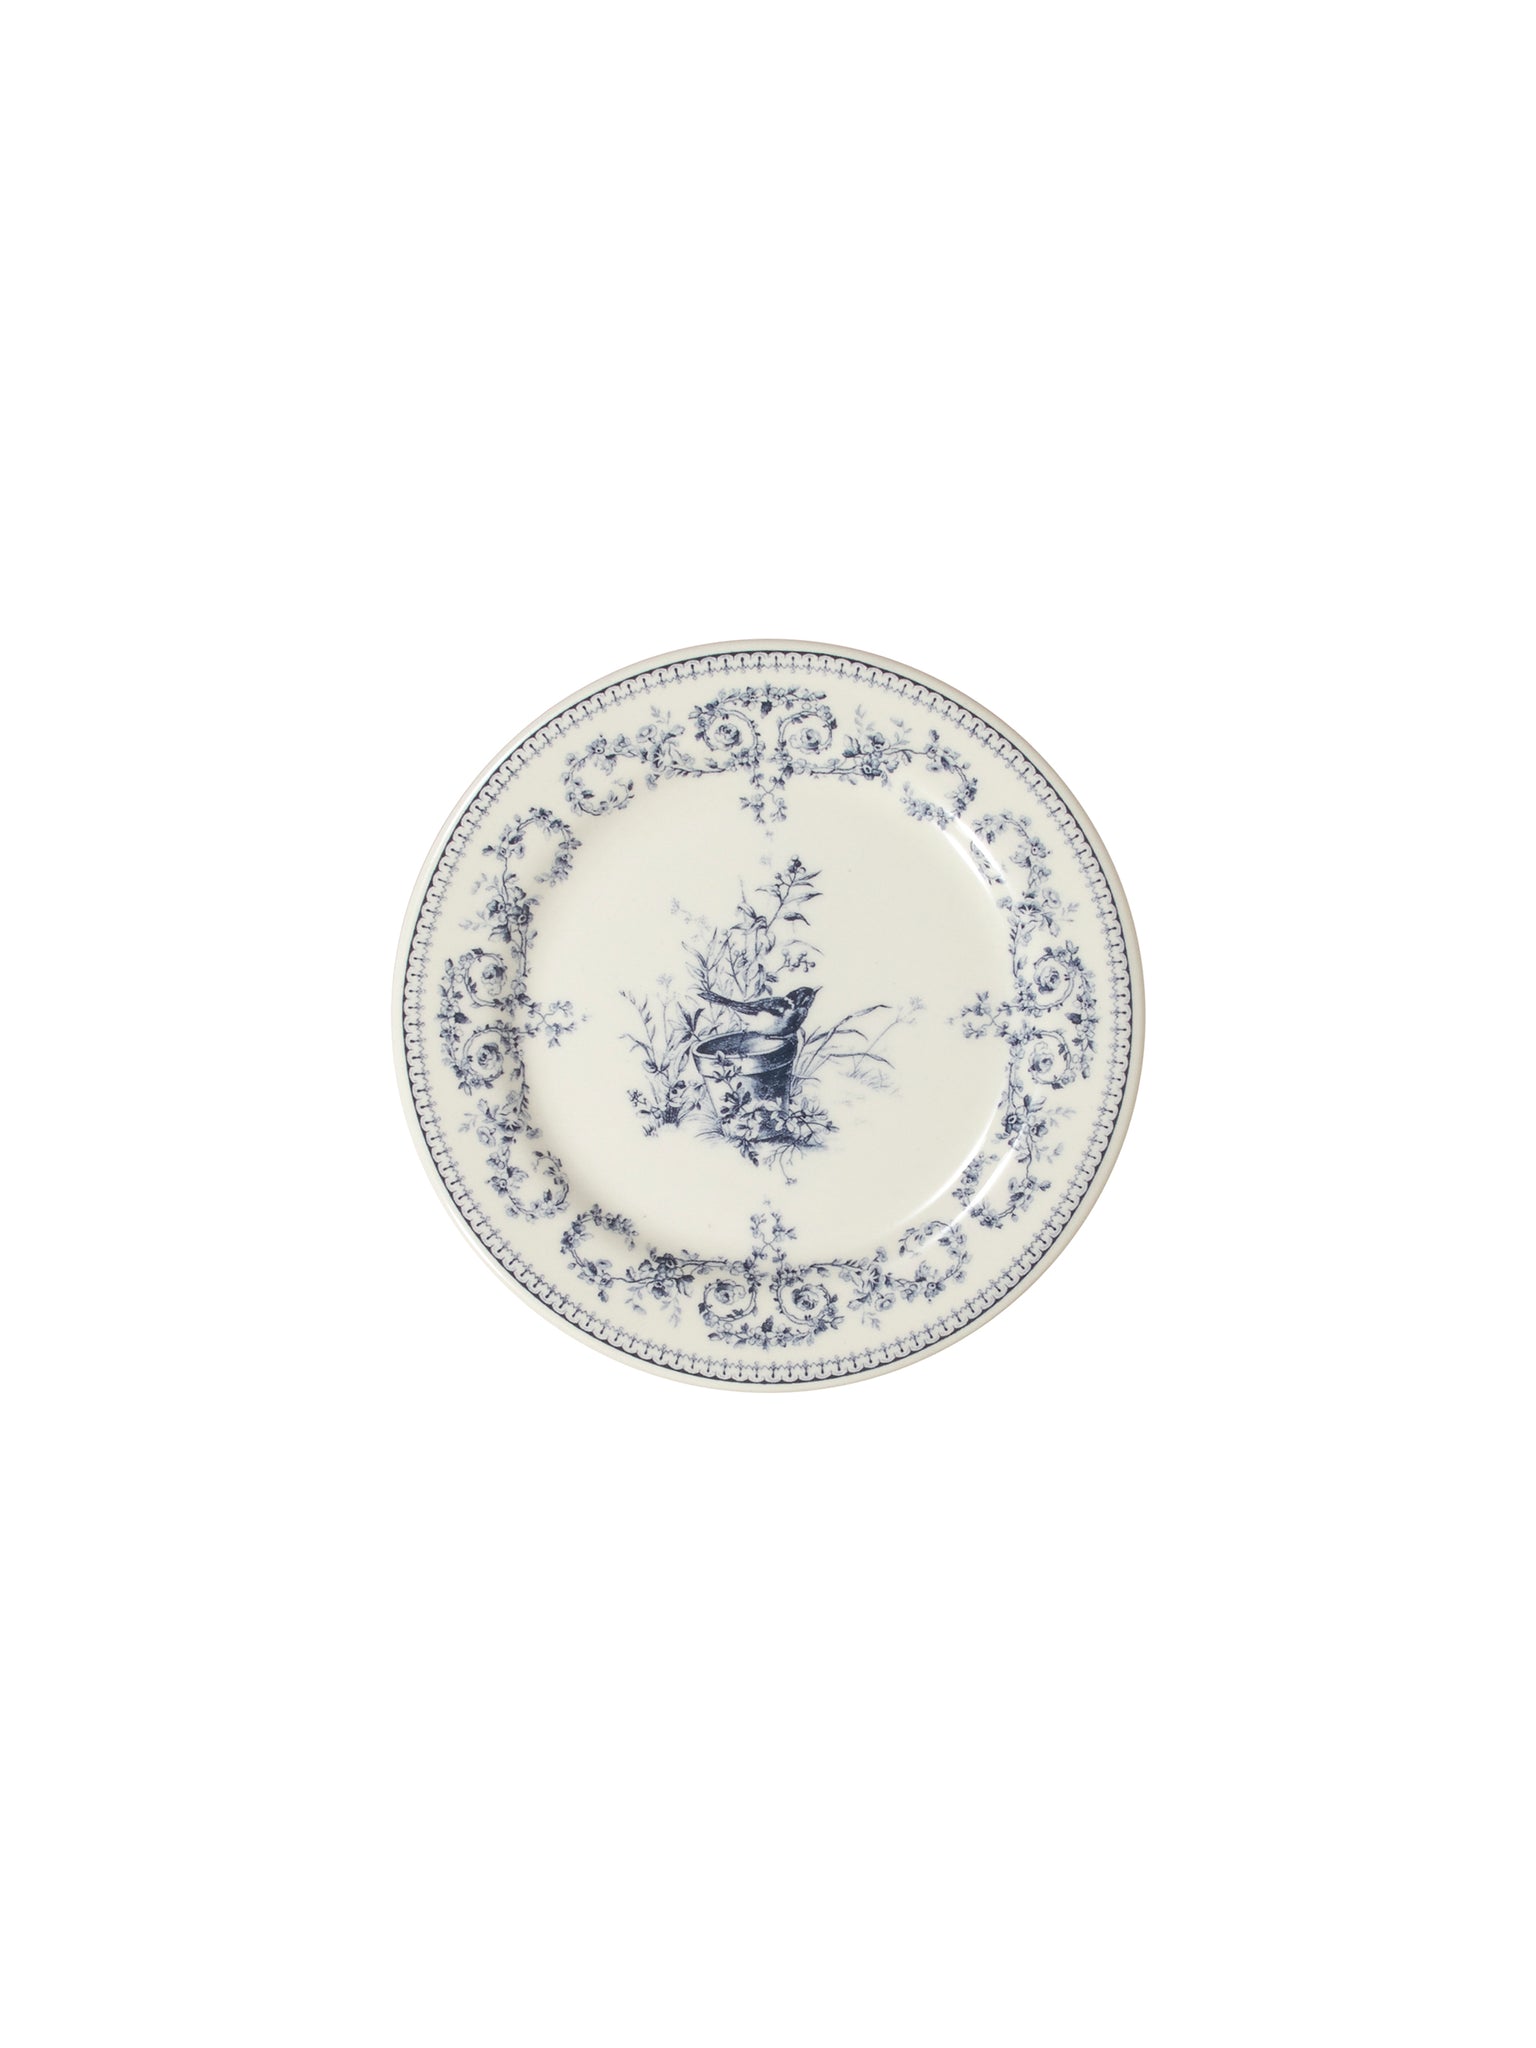 Gien Les Dépareillées Bleu Coaster or Mini Plate Set Weston Table